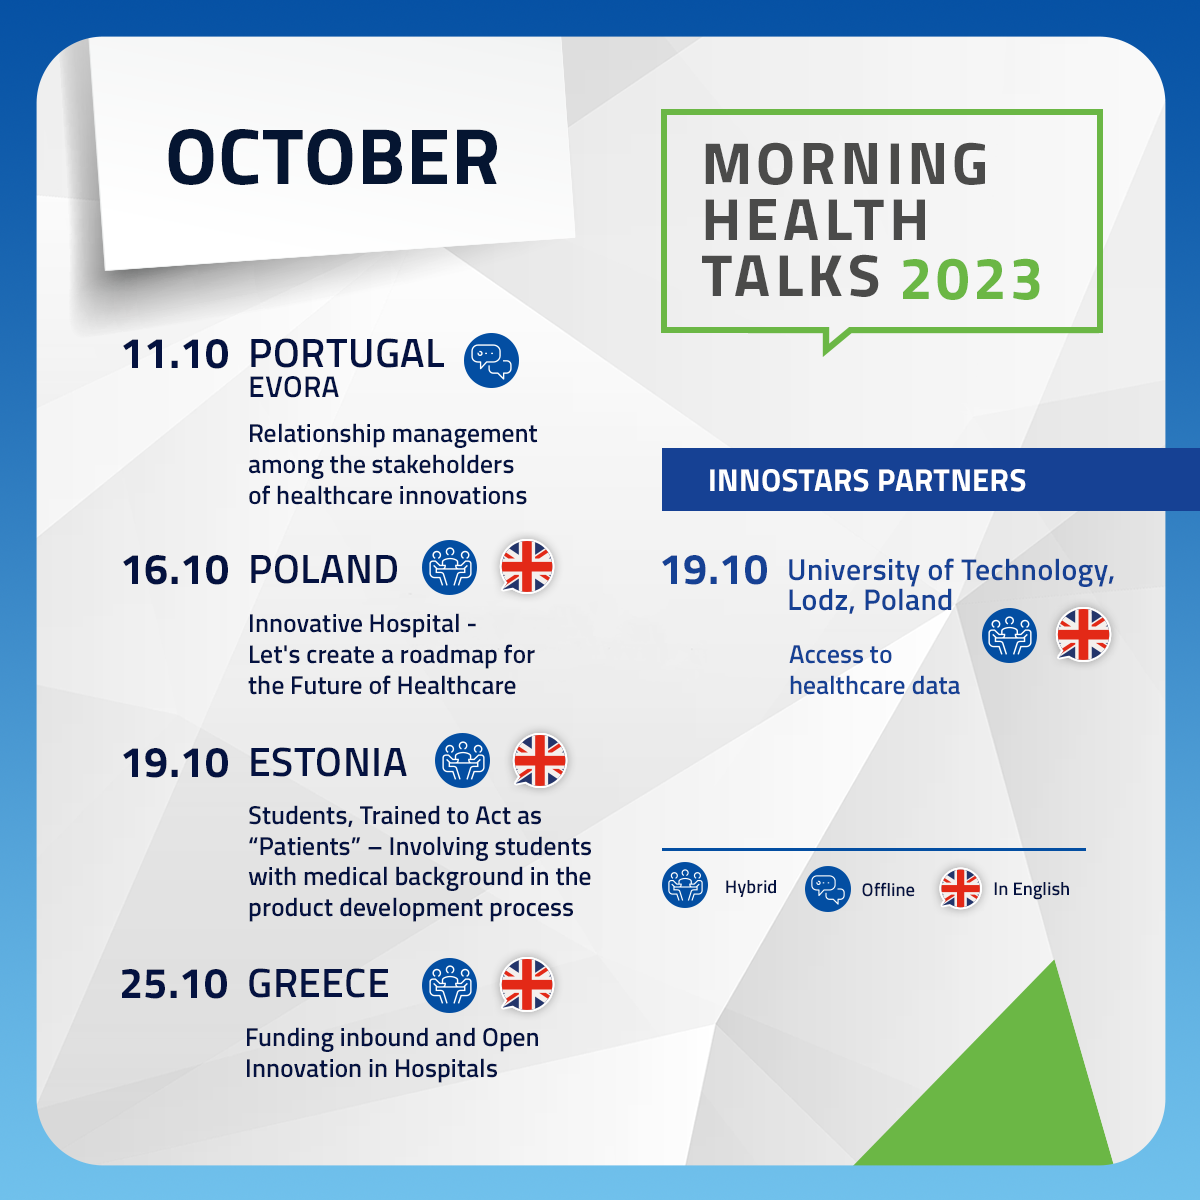 Morning Health Talks 2023_October